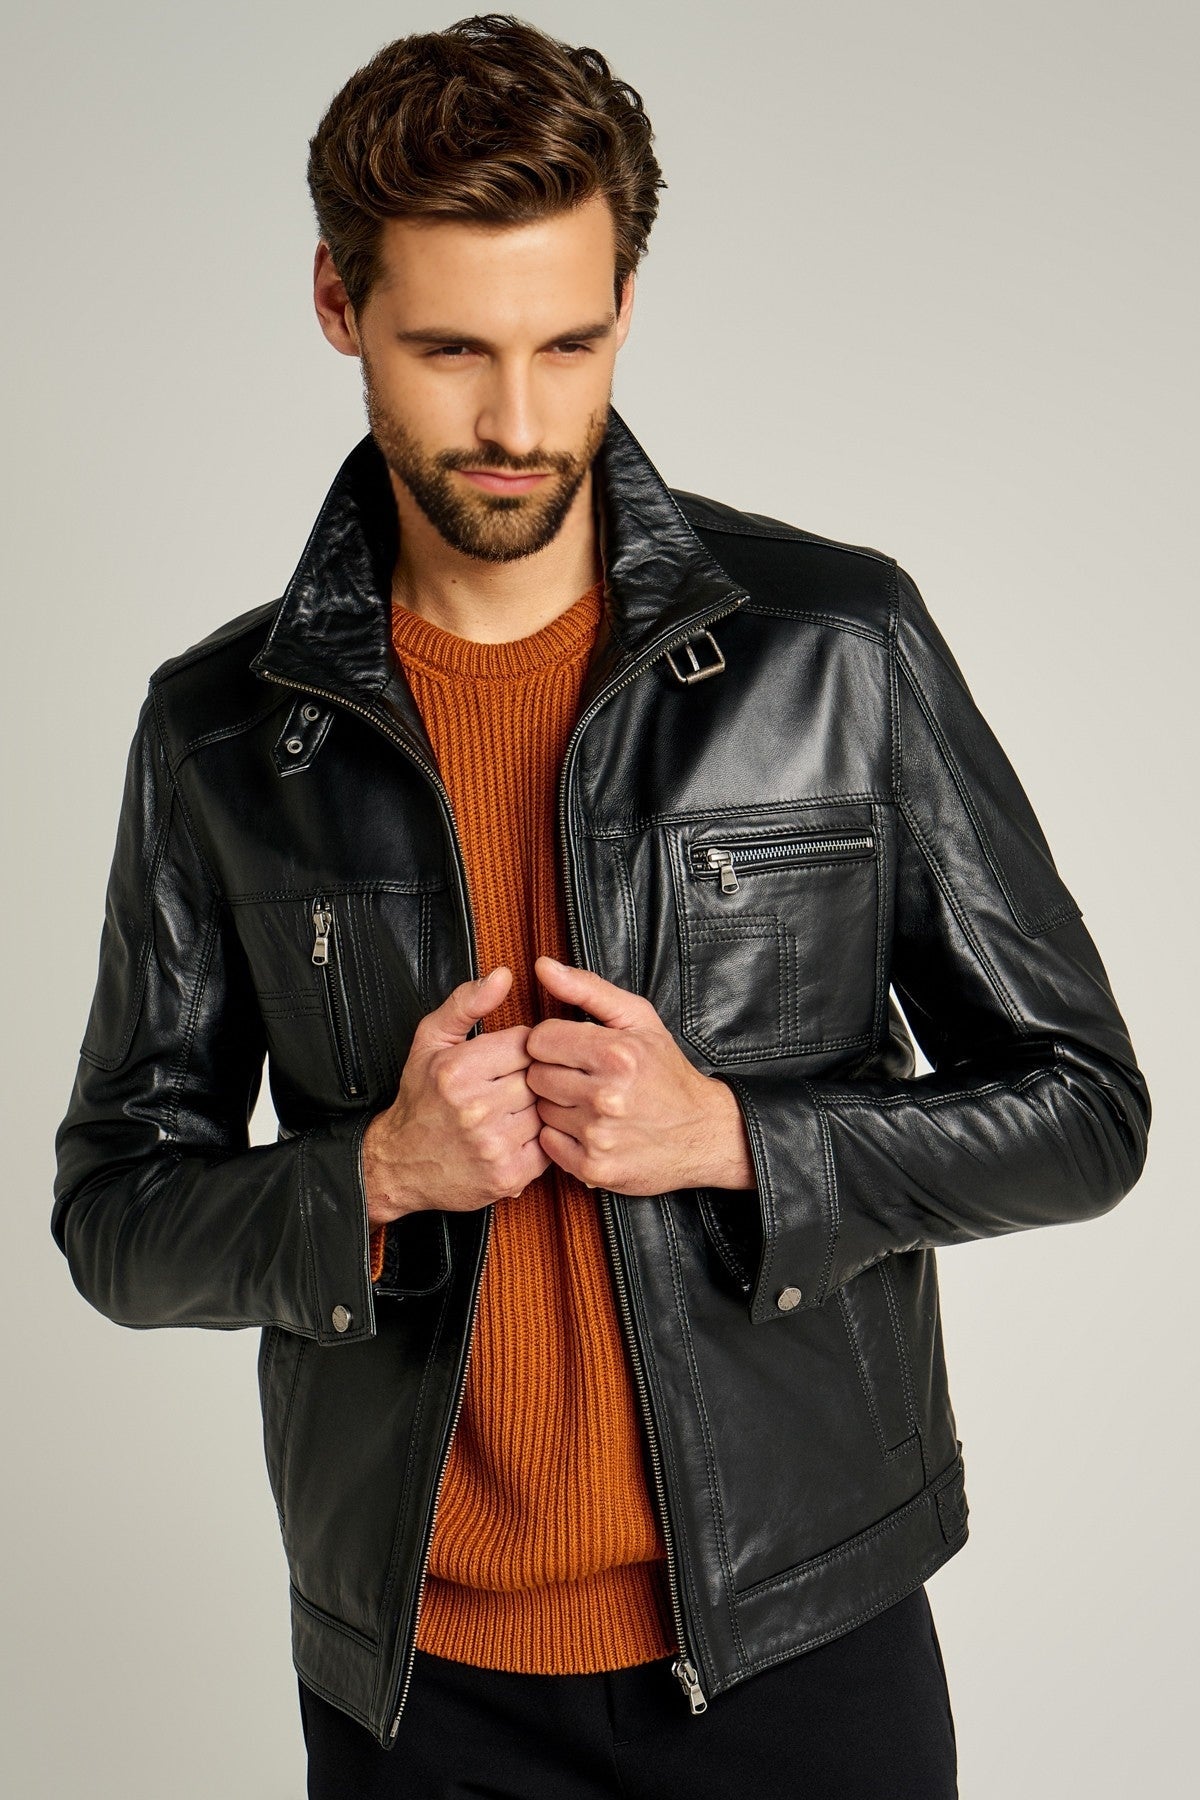 Muller Men's Black Leather Jacket